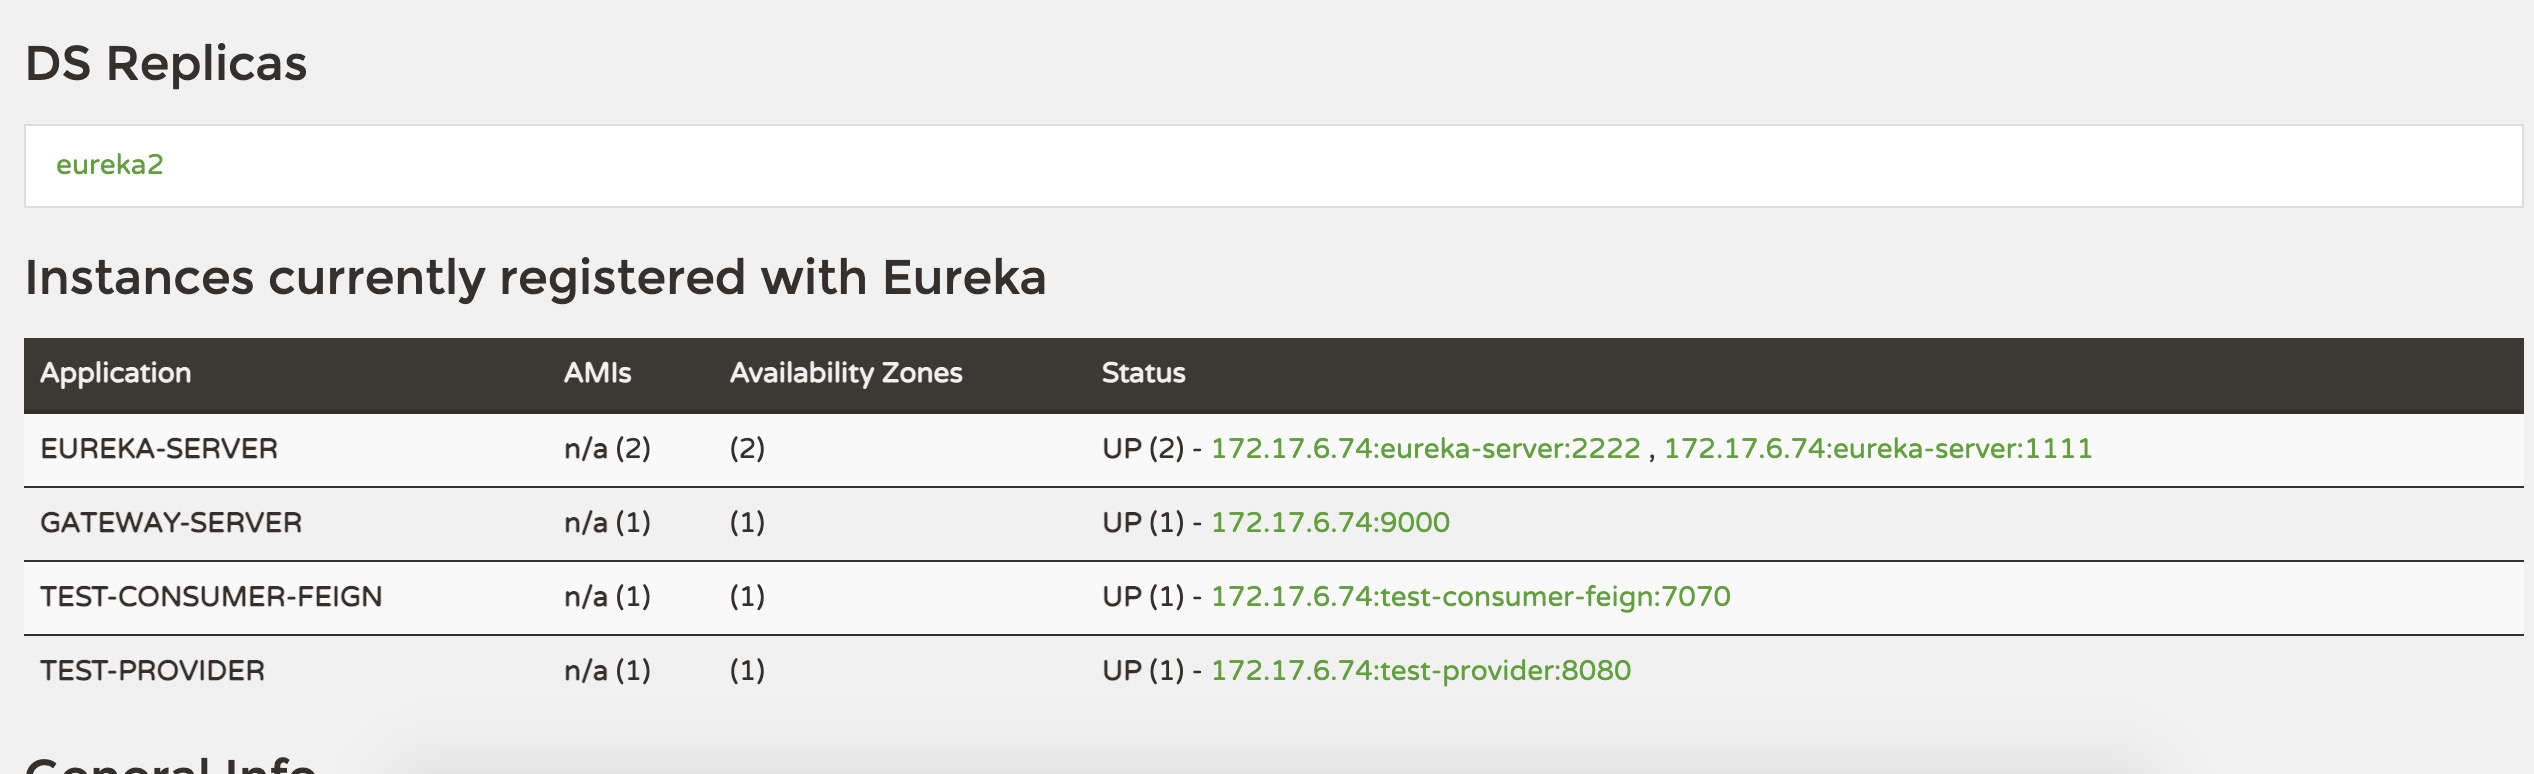 "Spring Cloud Gateway注册到Eureka,并获取Eureka的路由信息"